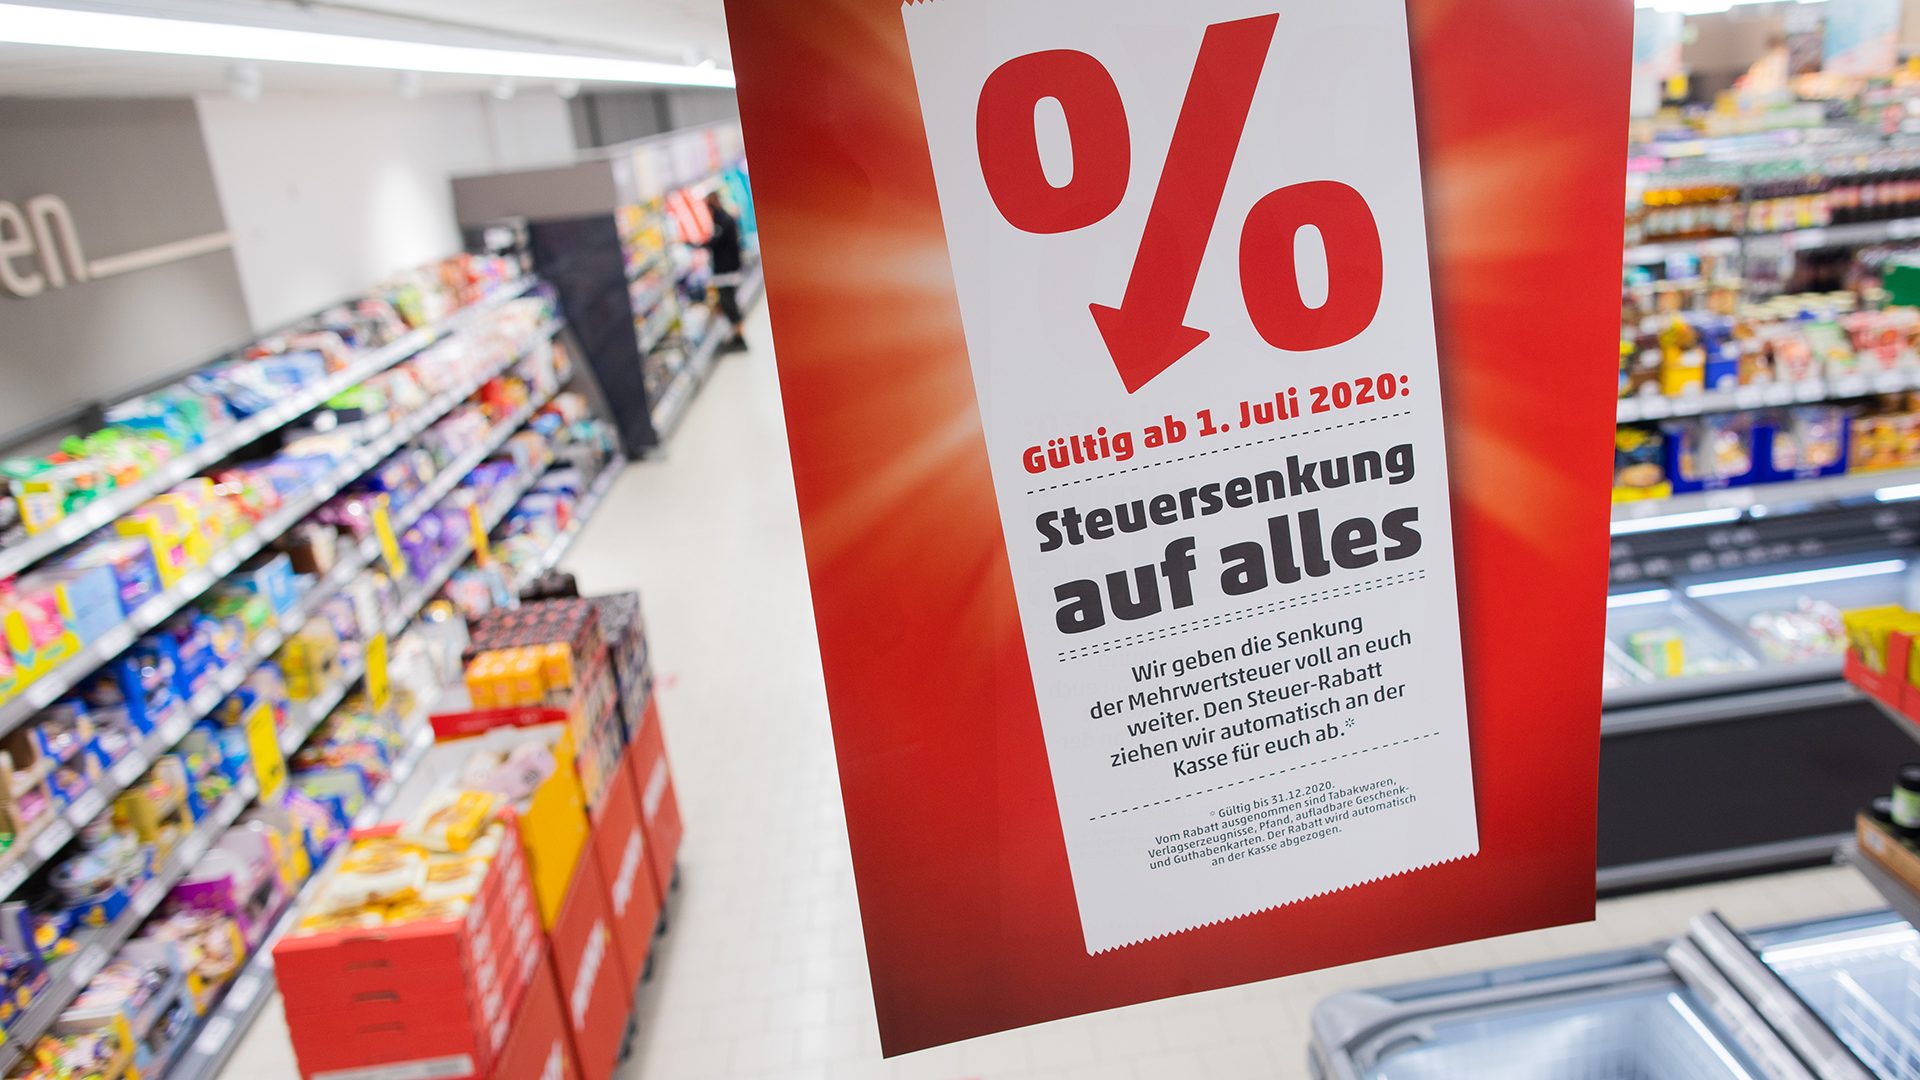  Ein Plakat mit der Aufschrift "Steuersenkung für alle" hängt in einem Supermarkt. | dpa